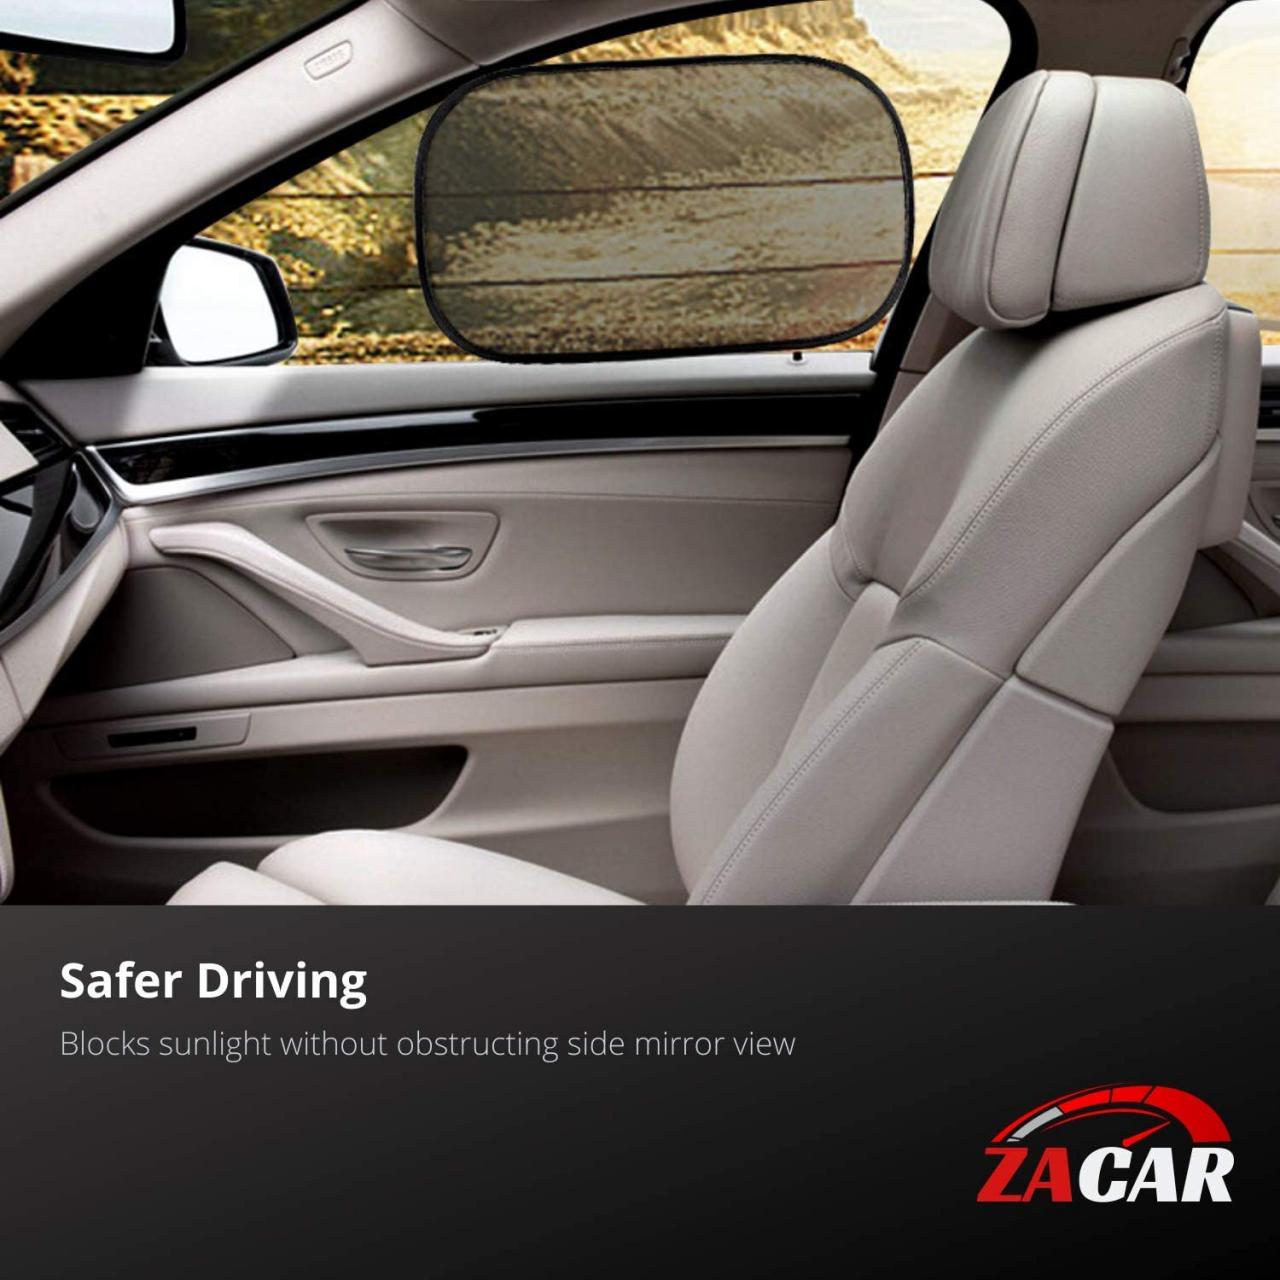 Buy ZACAR Car Window Shade (4 Pack), Baby Car Sun Shade, Cling Baby Shade  for Car - 80 GSM Car Sun Shade - Protect Your Baby with Back Window Sun  Shade,2 Pack